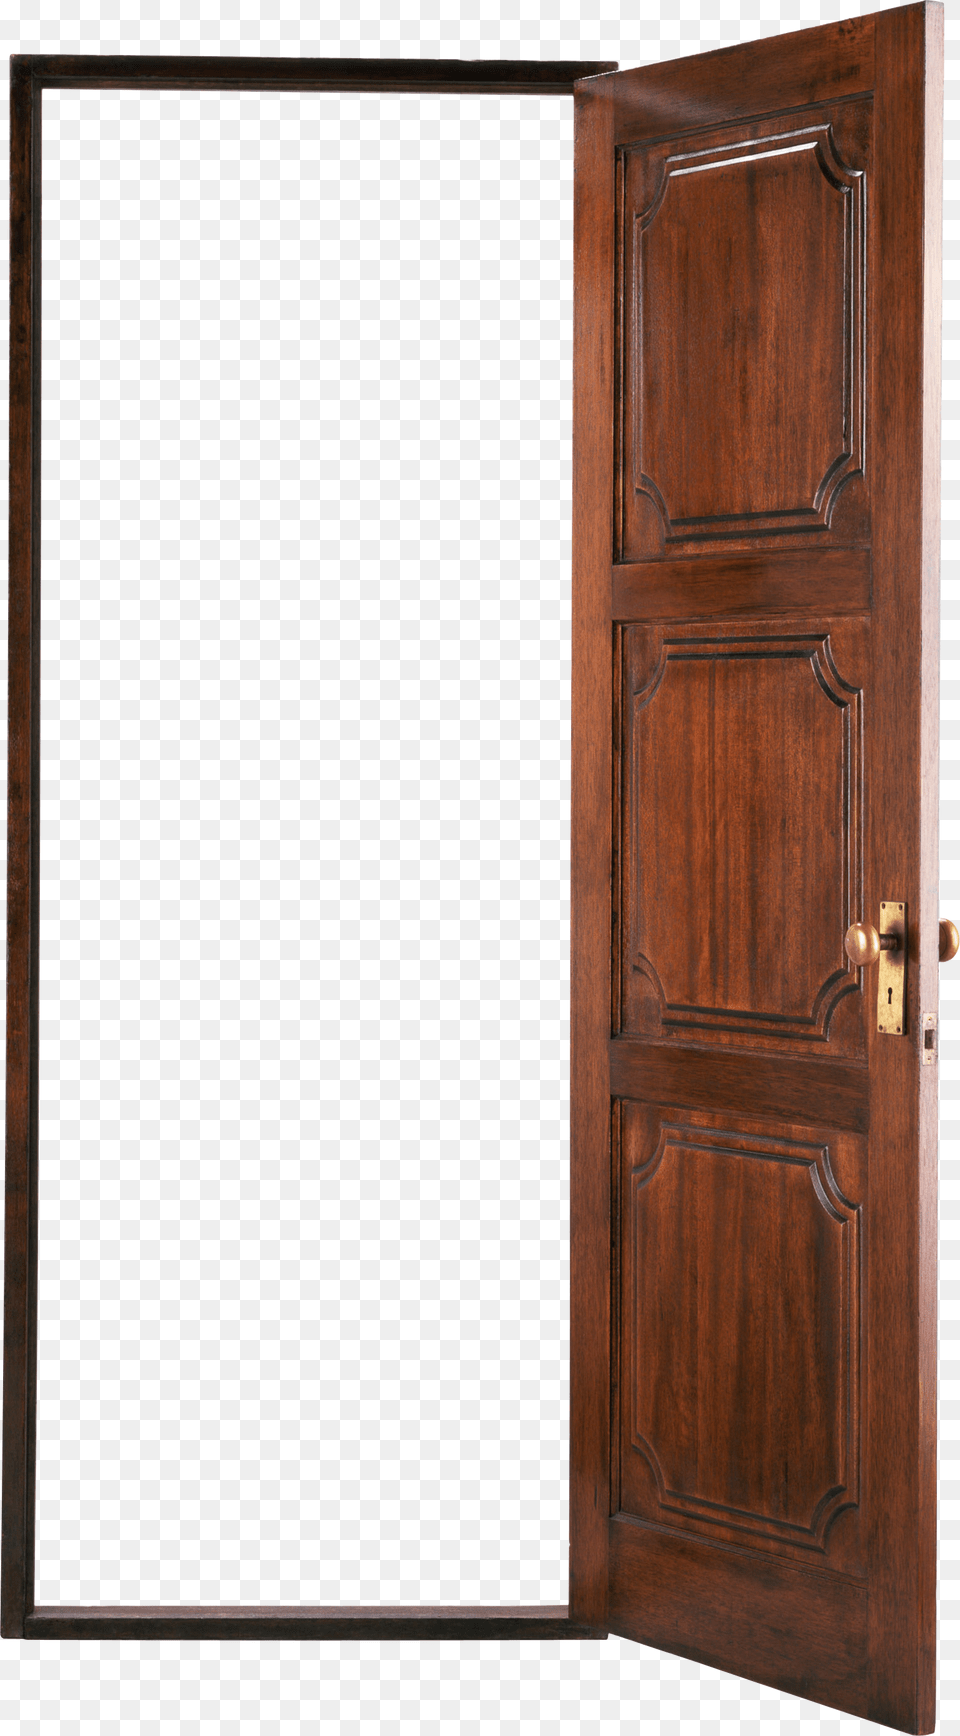 Door, Cabinet, Furniture Png Image